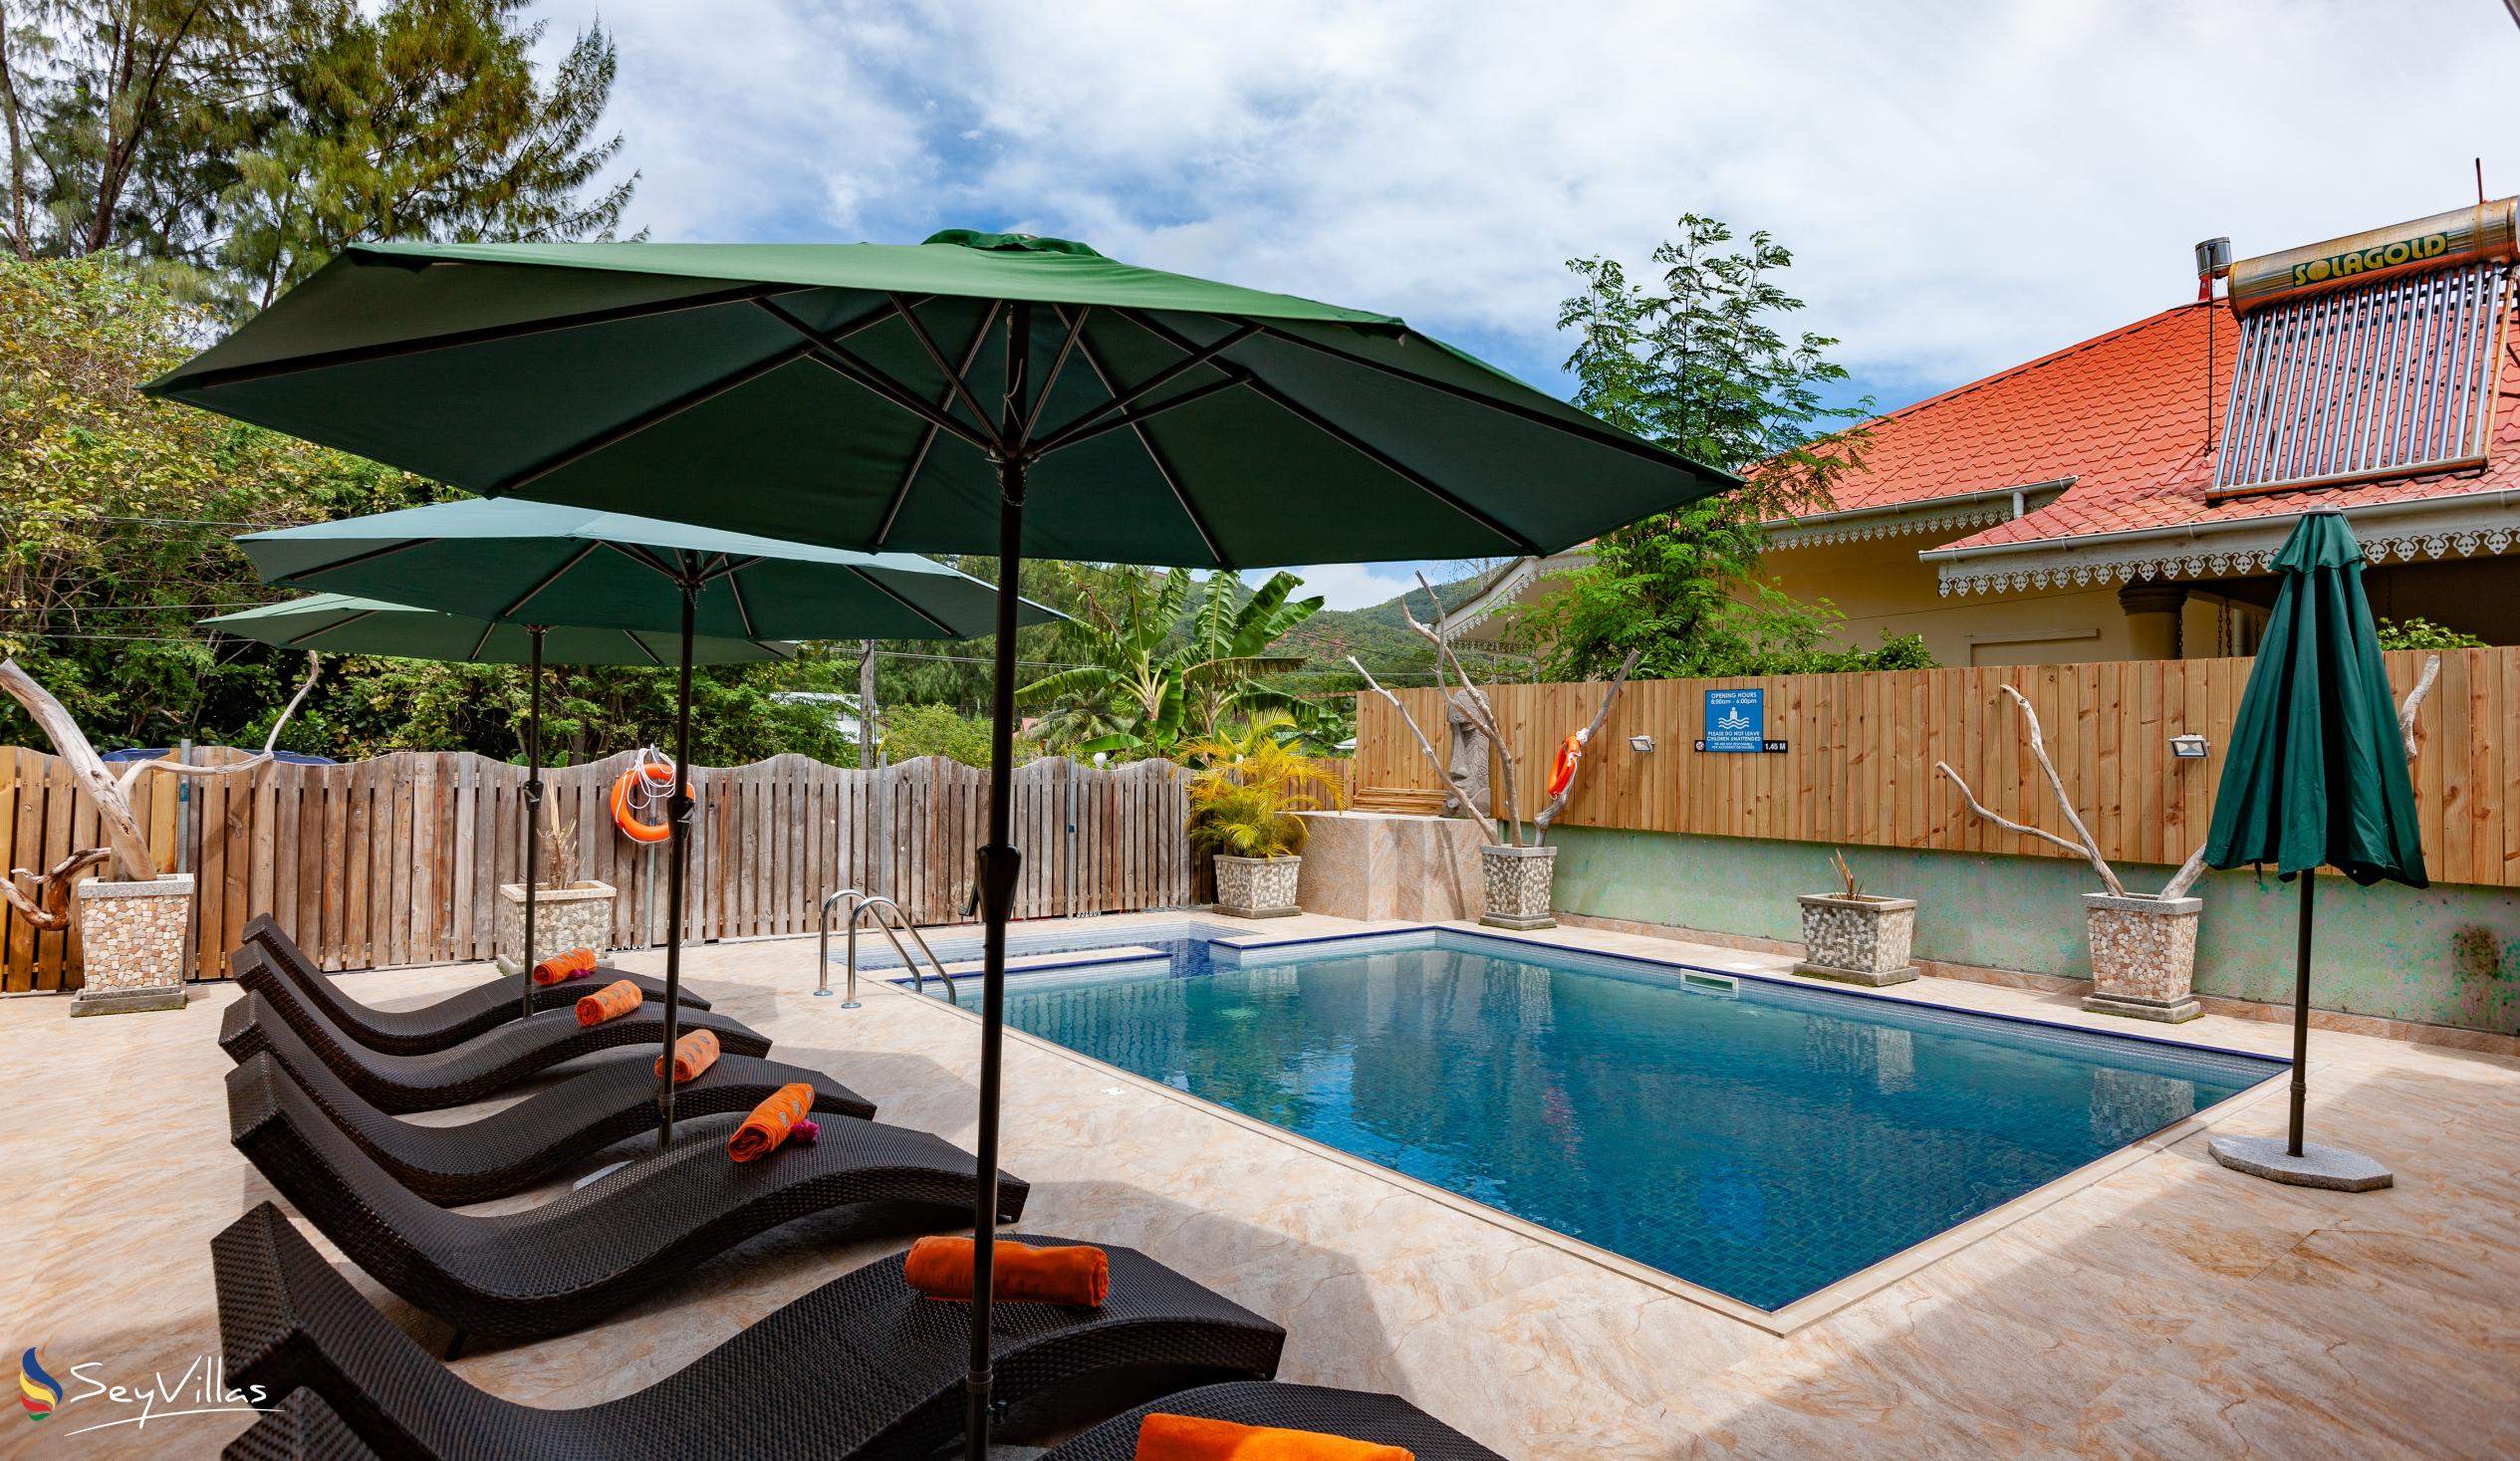 Foto 3: Chez Bea Villa - Aussenbereich - Praslin (Seychellen)